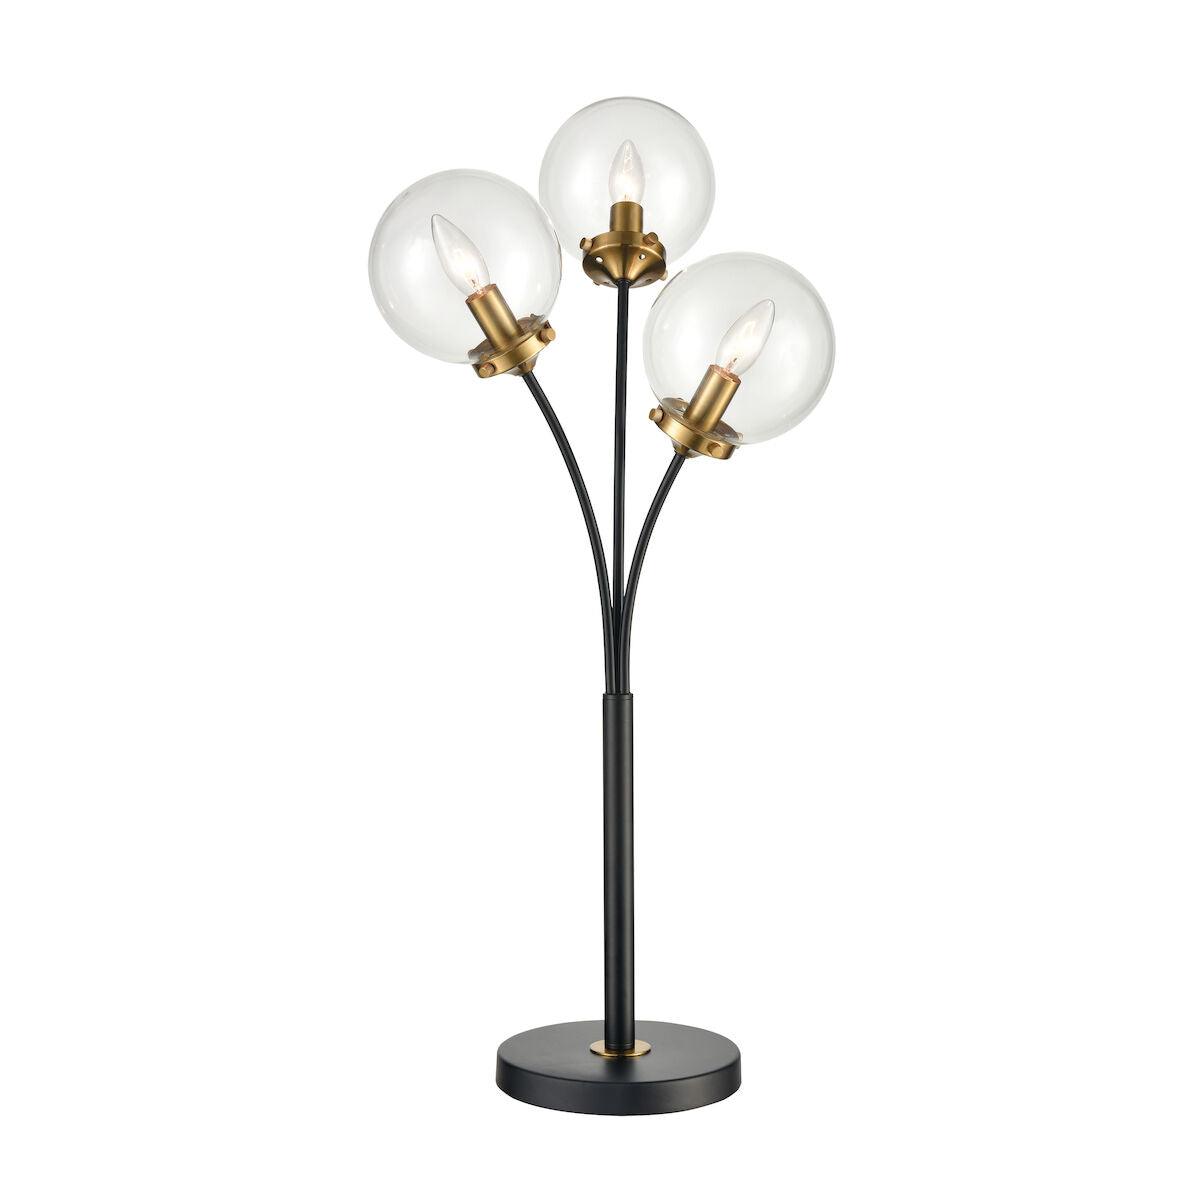 Boudreaux Table Lamp